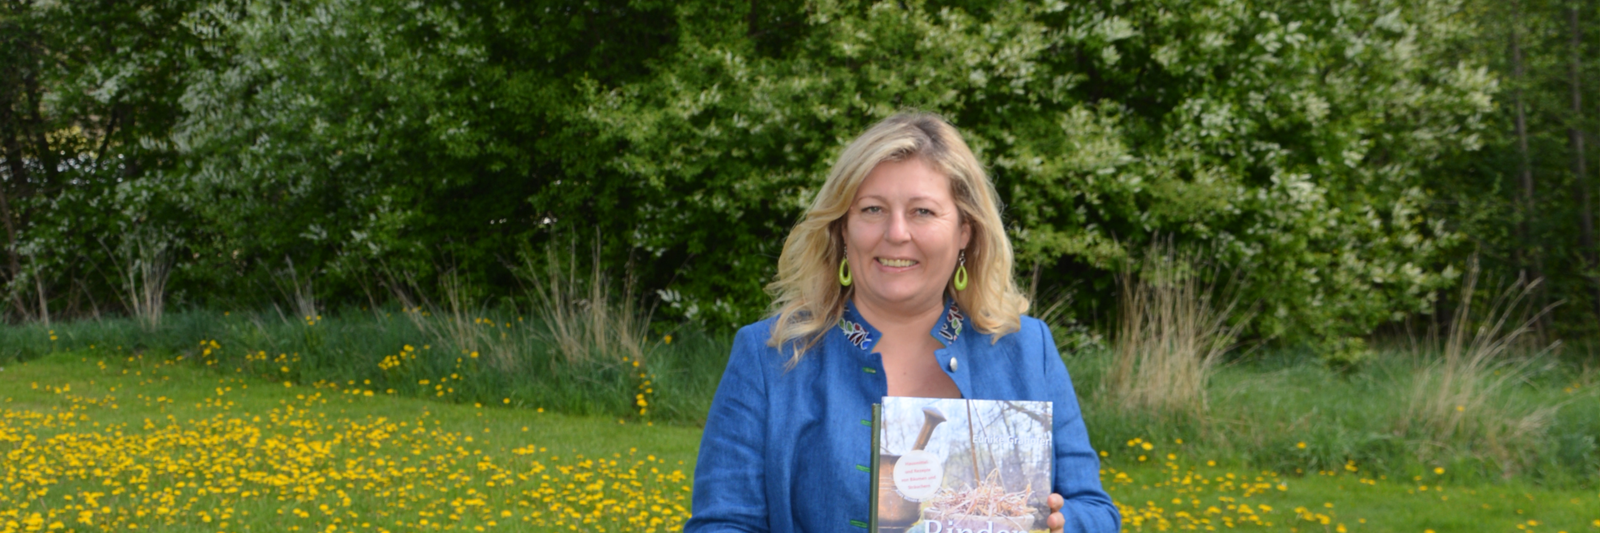 Eunike Grahofer mit ihrem neuen Buch Rindenmedizin